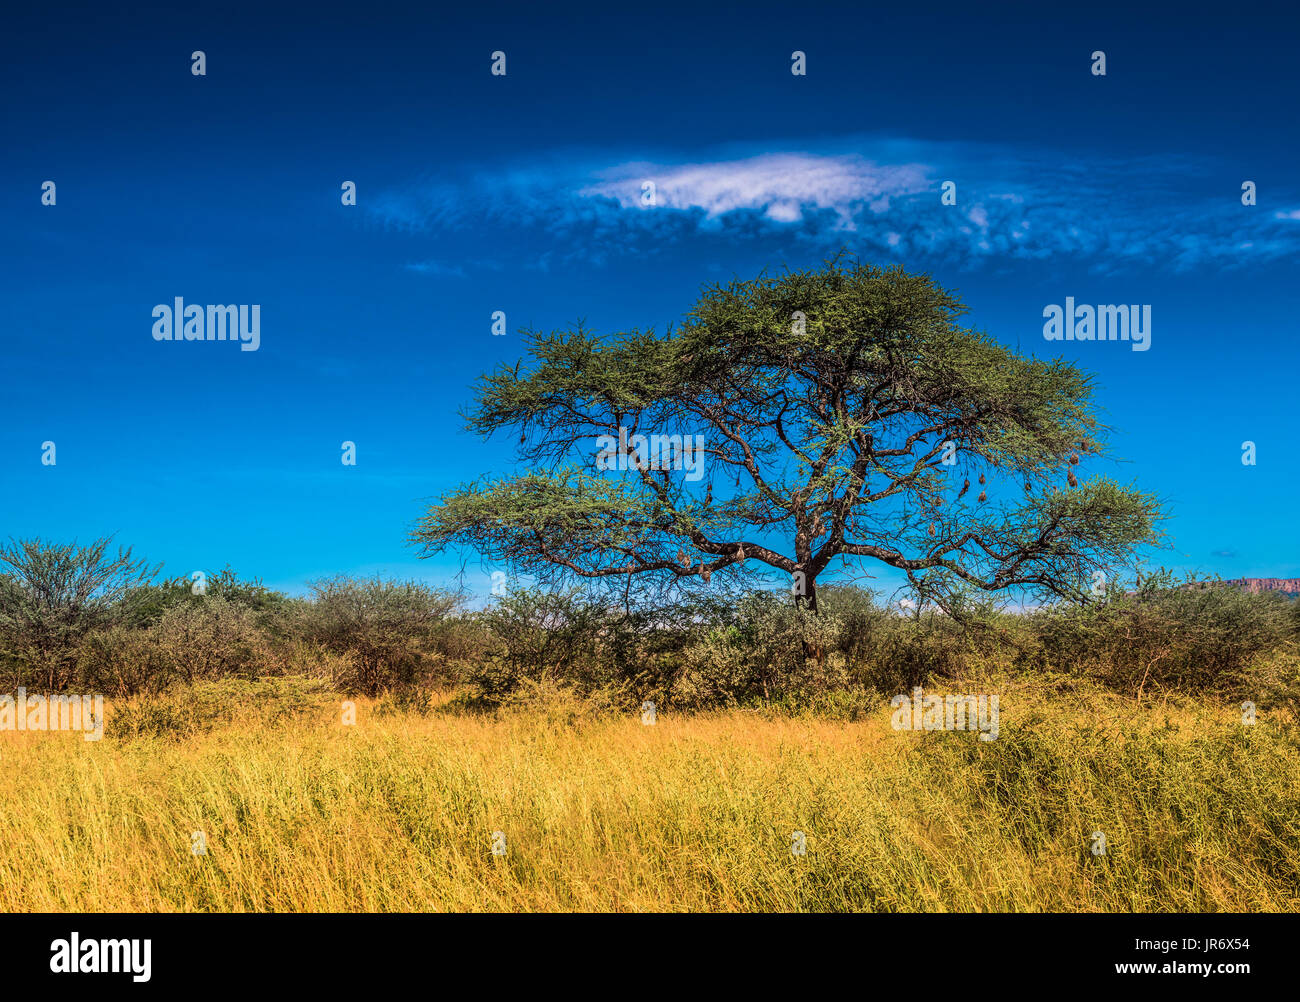 Baum in der Savanne, klassische afrikanische Landschaft Stockfoto